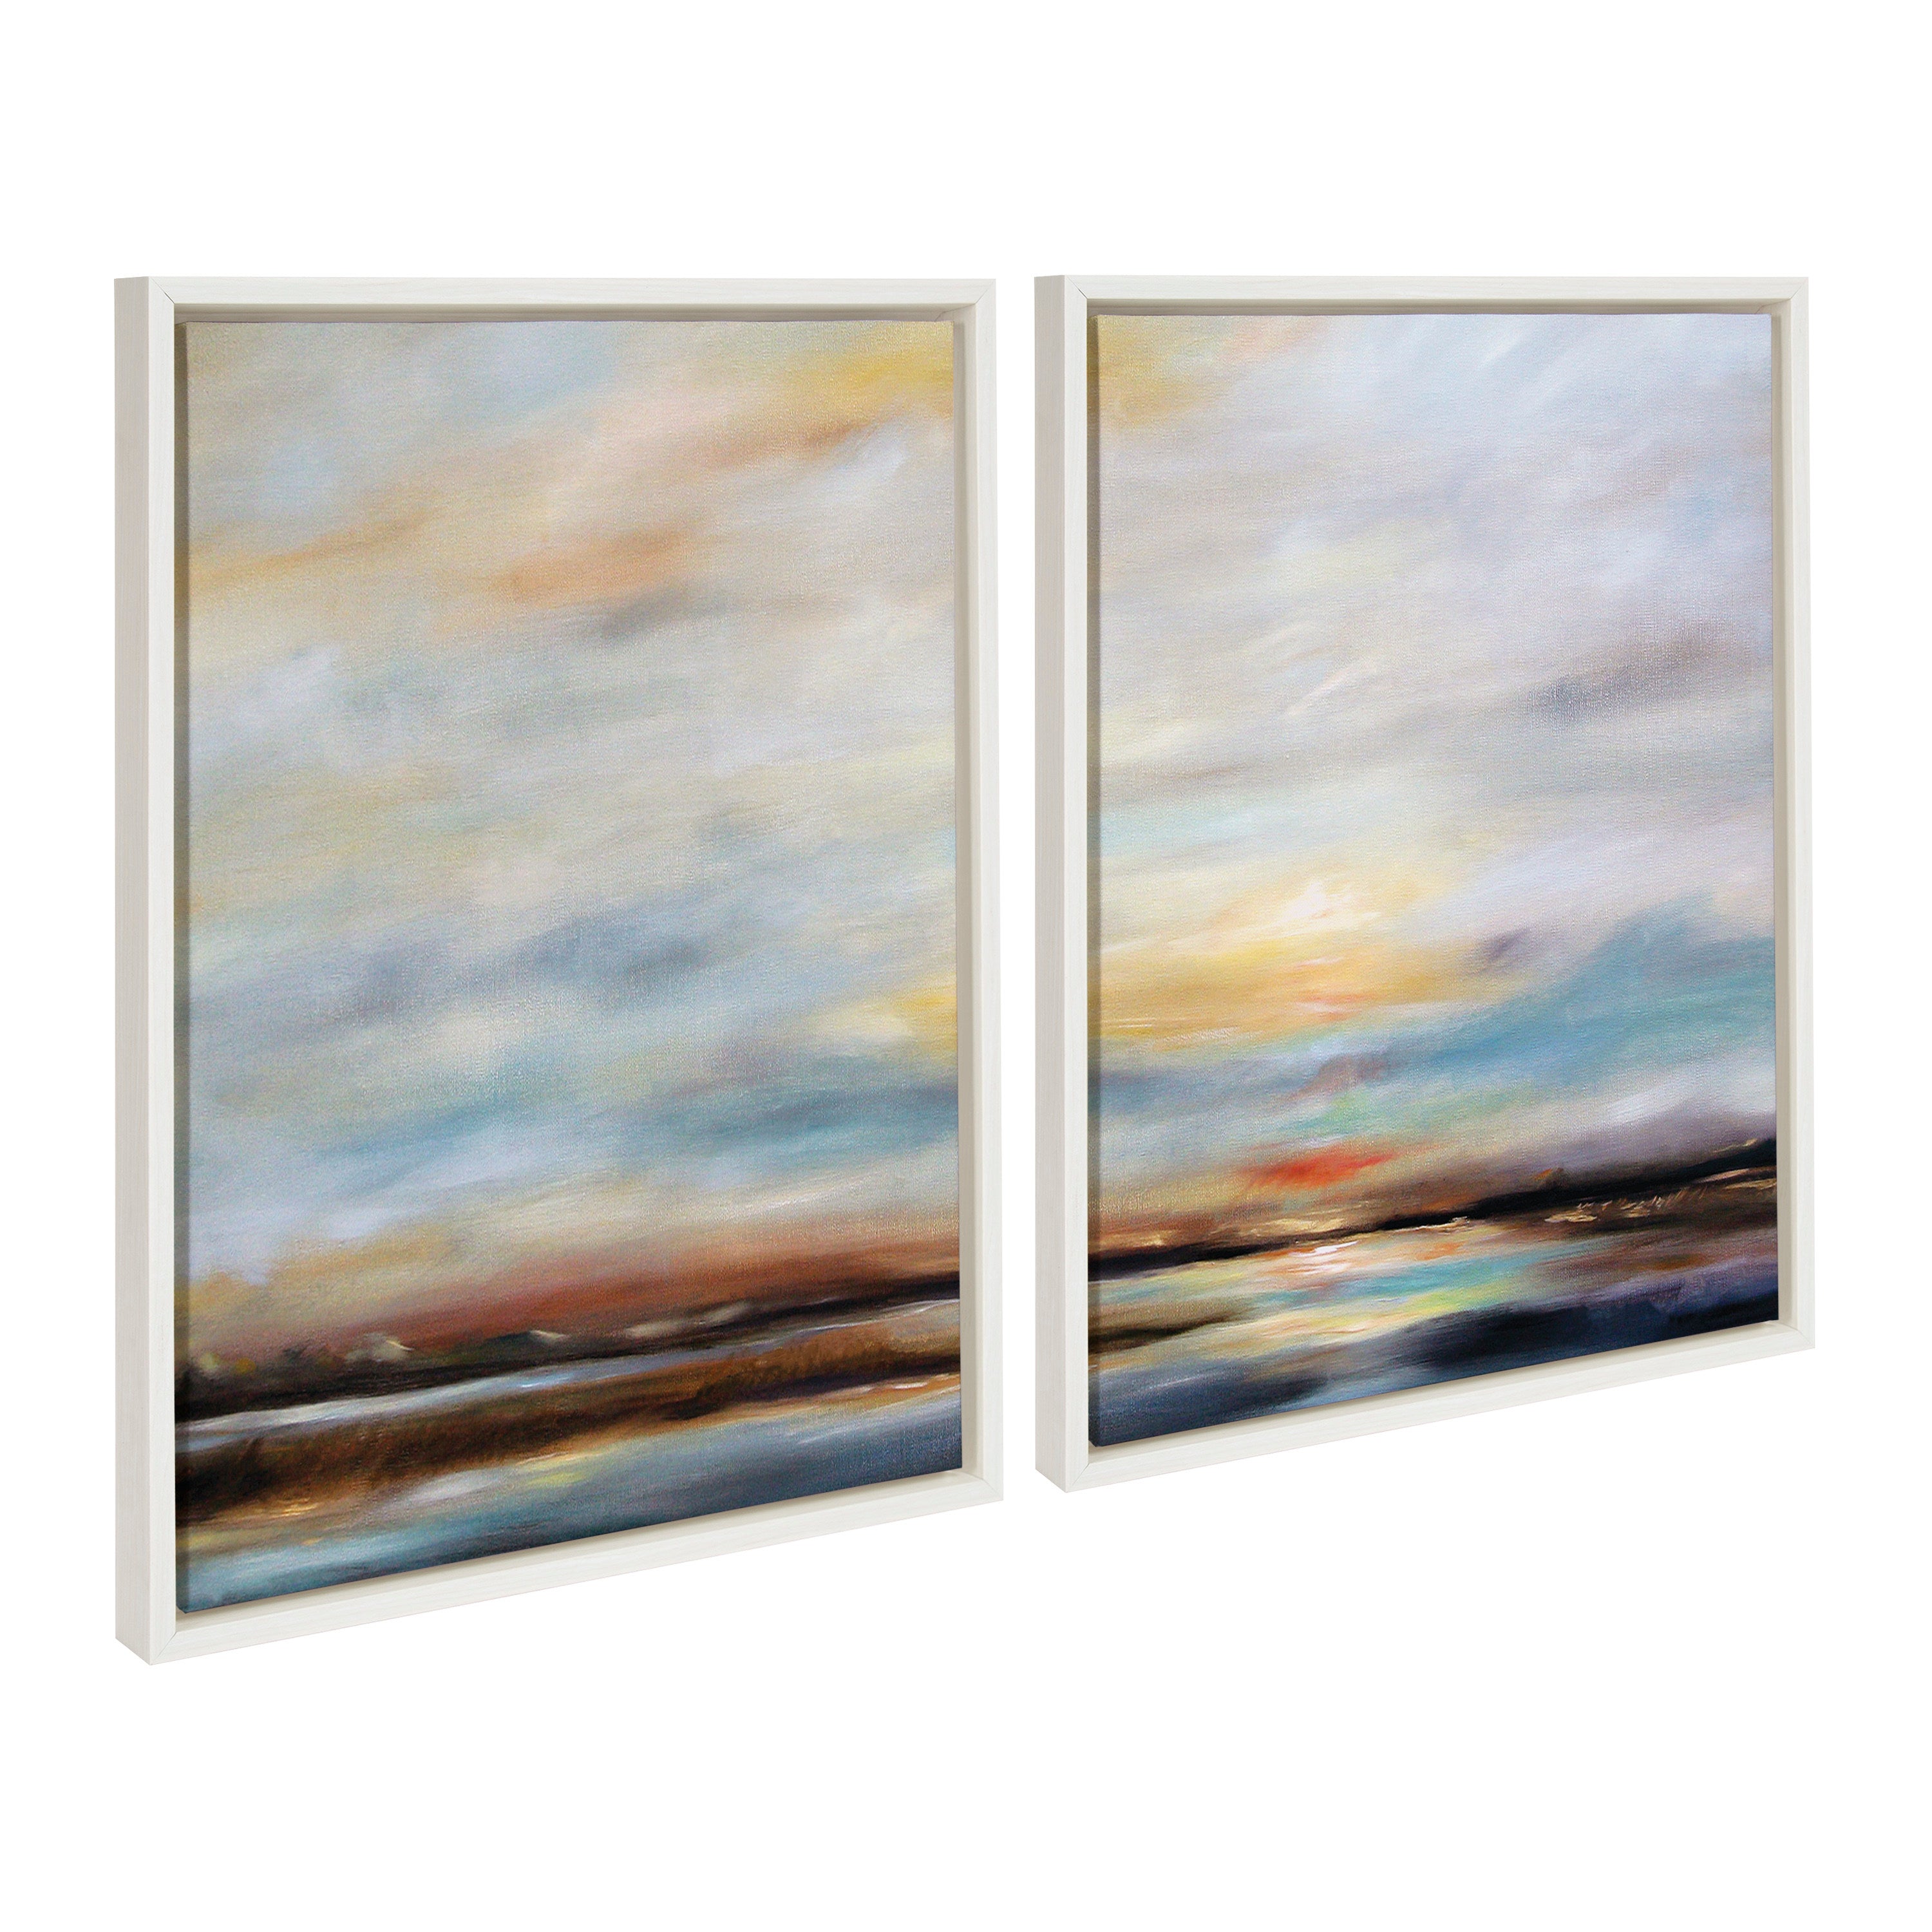 Sylvie Carolina Sunset Diptych Framed Canvas Art Set by Mary Sparrow